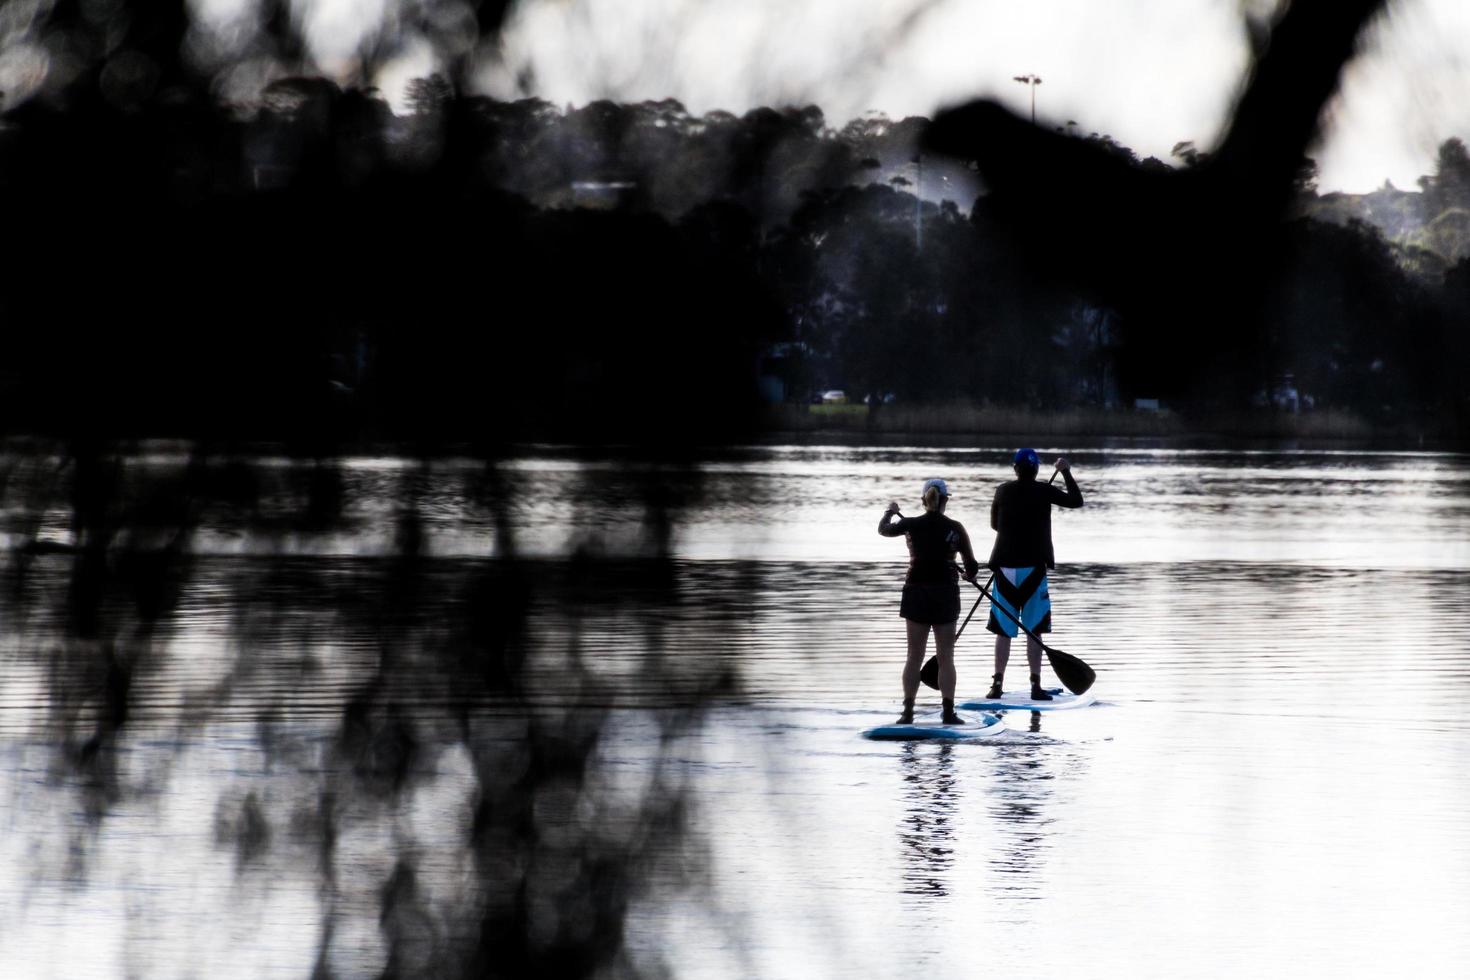 Sydney, Australie, 2020 - deux personnes font du paddleboard photo